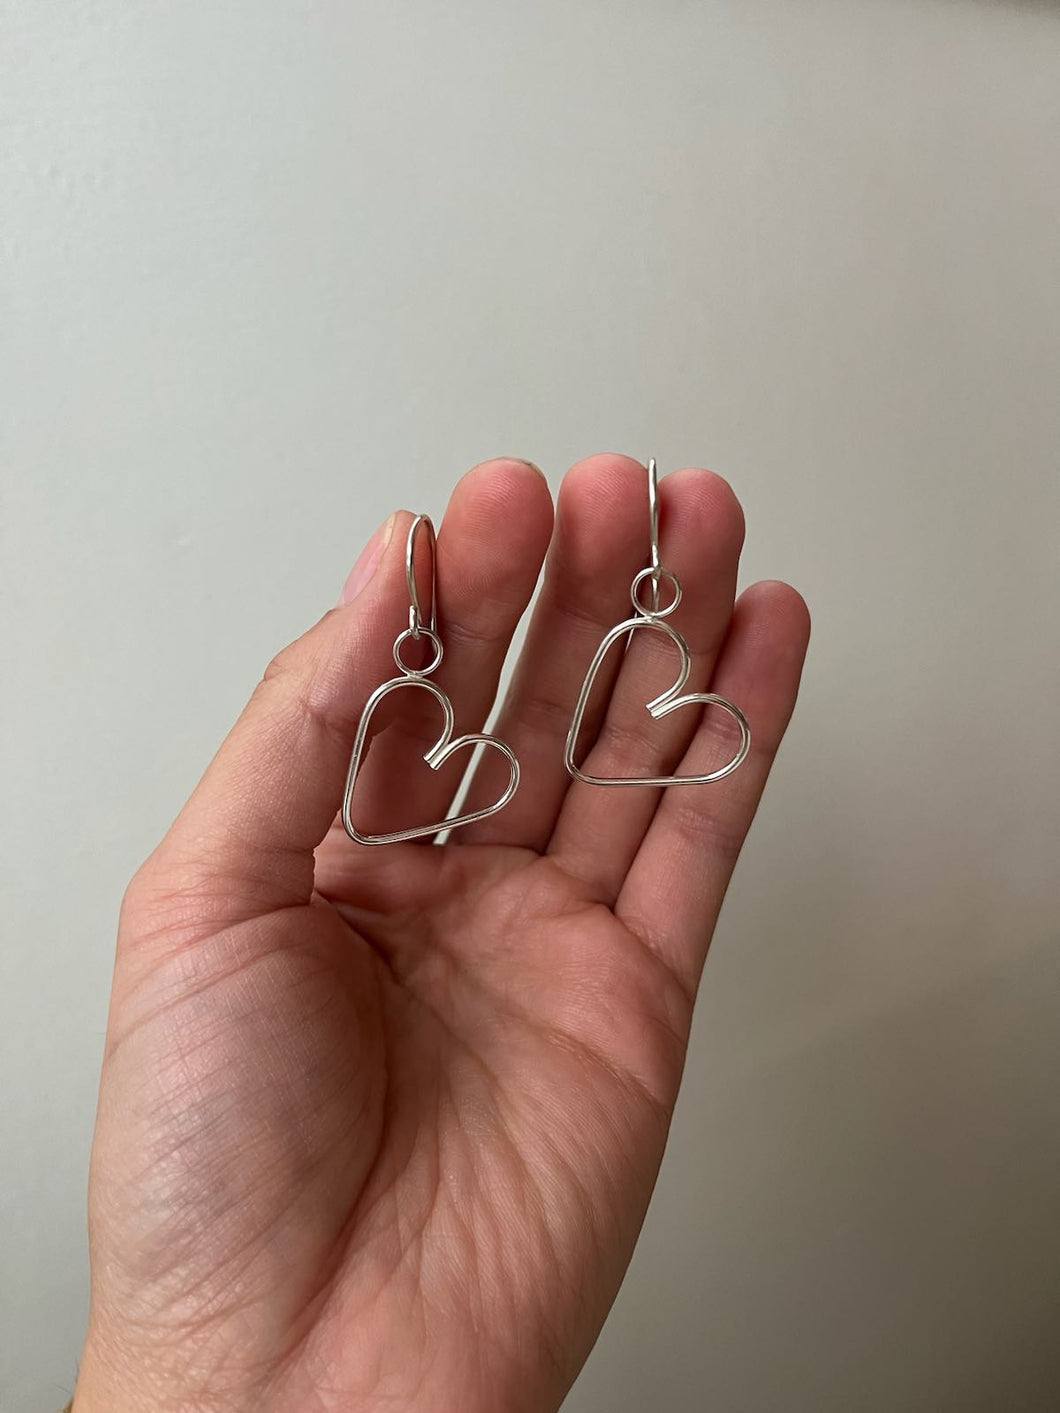 Heart earrings- ready to ship